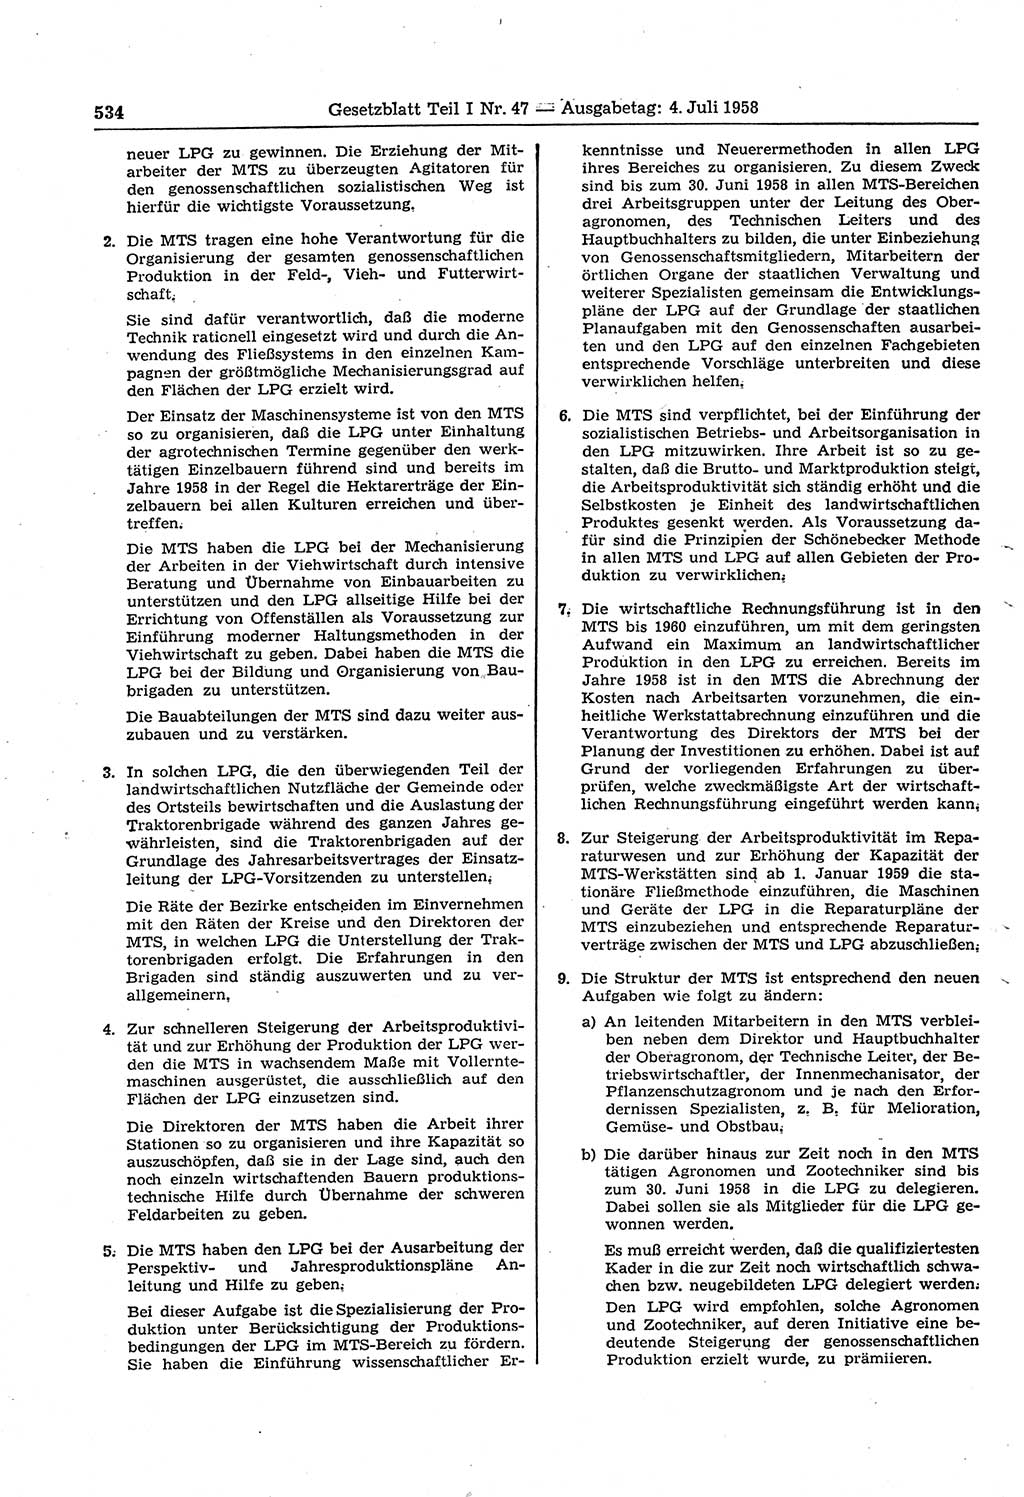 Gesetzblatt (GBl.) der Deutschen Demokratischen Republik (DDR) Teil Ⅰ 1958, Seite 534 (GBl. DDR Ⅰ 1958, S. 534)